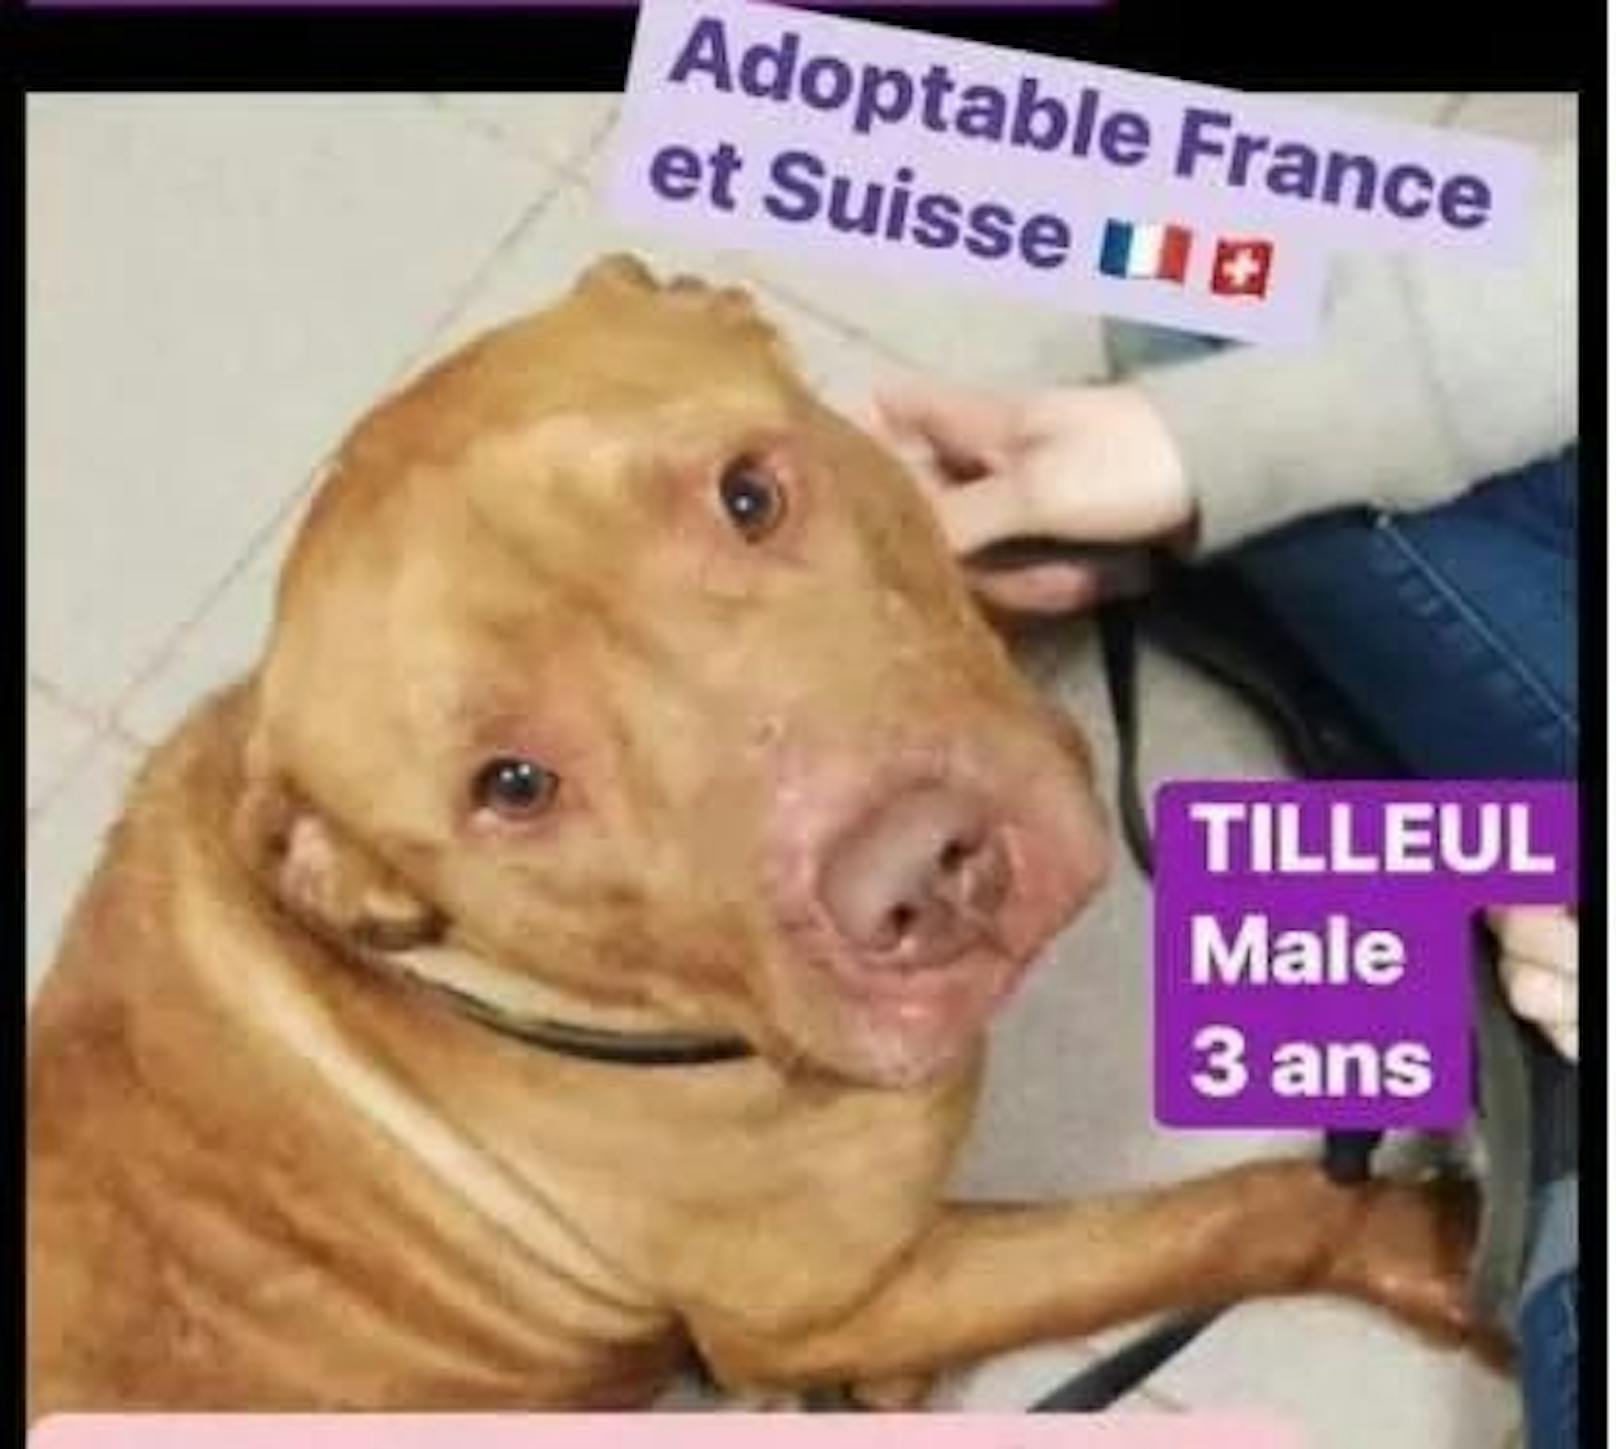 Hund Tilleul griff seine Besitzerin am 1. Juli 2021 unvermittelt an. Nach einigem Kampf erwürgte diese ihren Hund. Jetzt wurde ein Urteil im entsprechenden Gerichtsprozess gefällt.